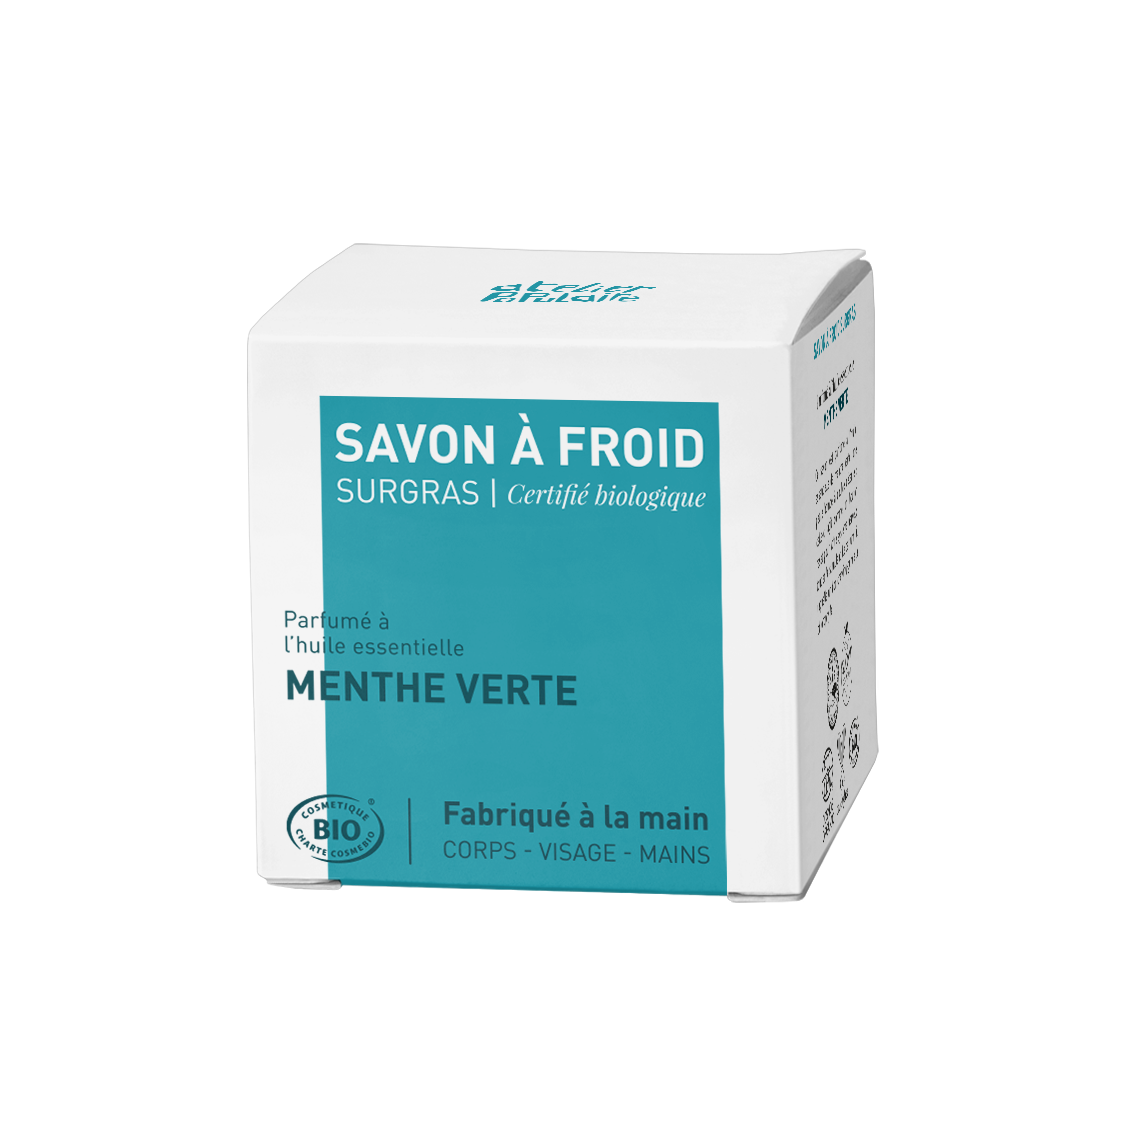 Savon saponifié à froid certifié bio artisanal - Menthe verte par Atelier Populaire - 90g